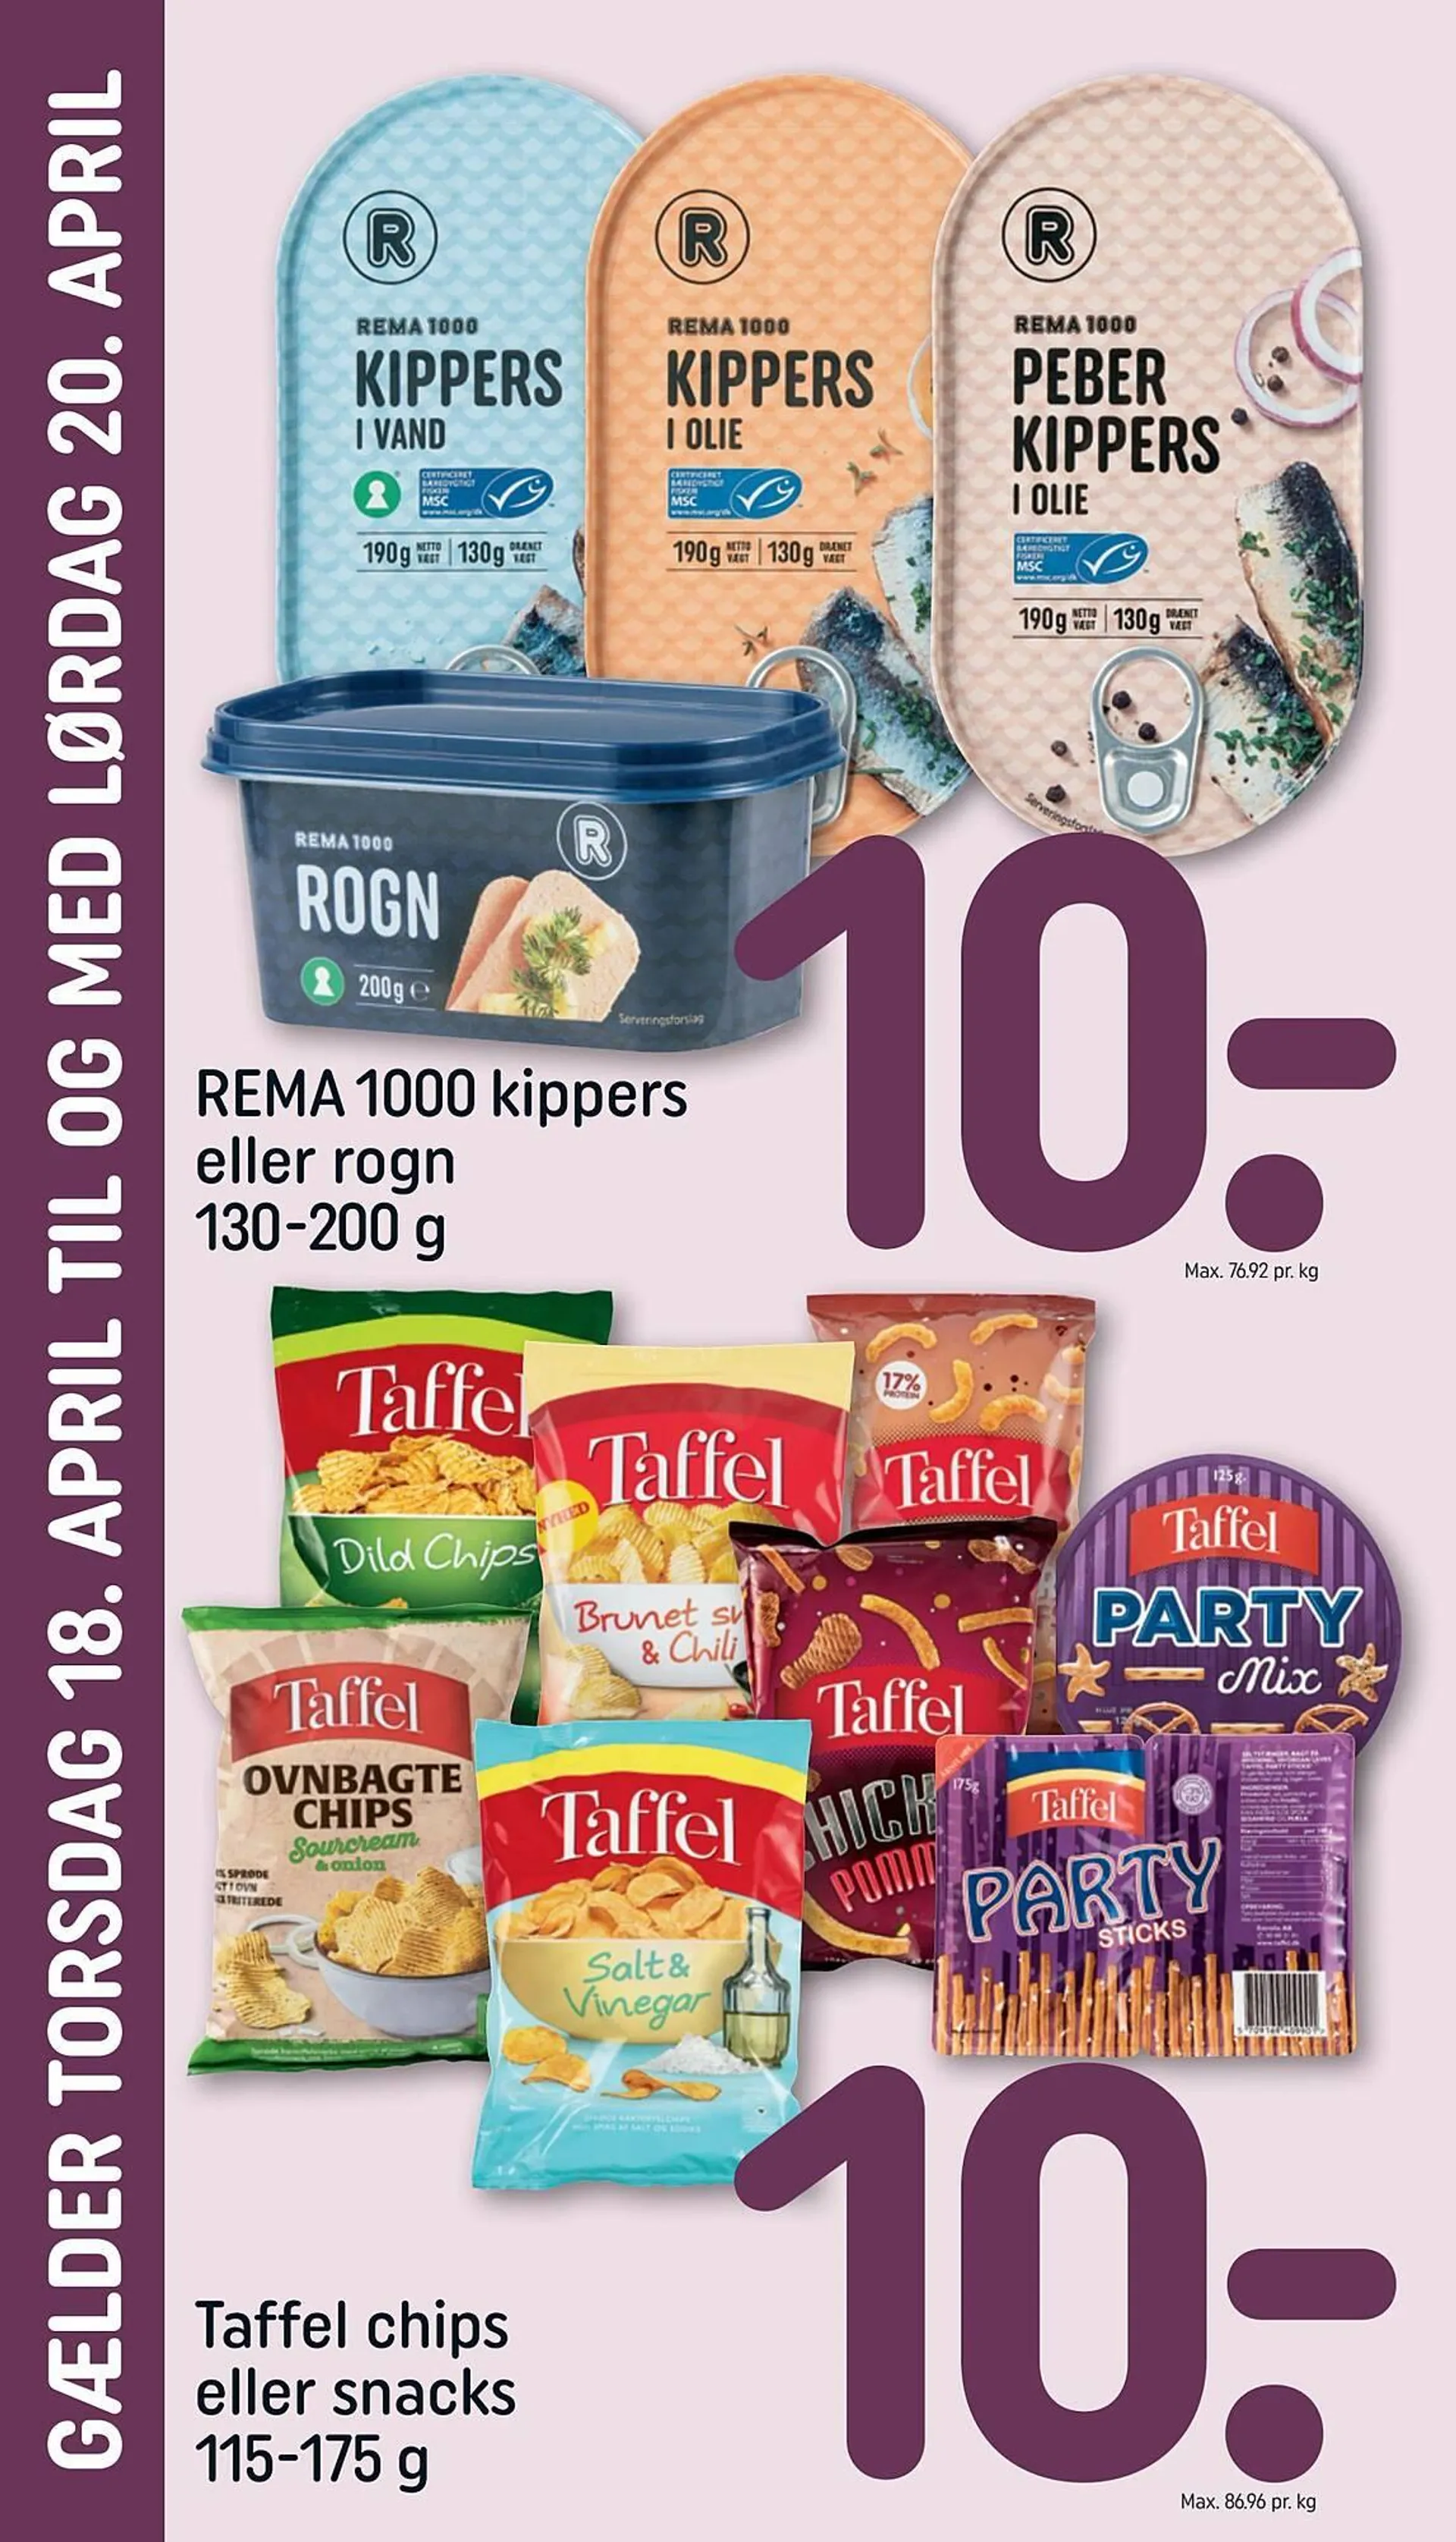 Rema 1000 tilbudsavis - 2